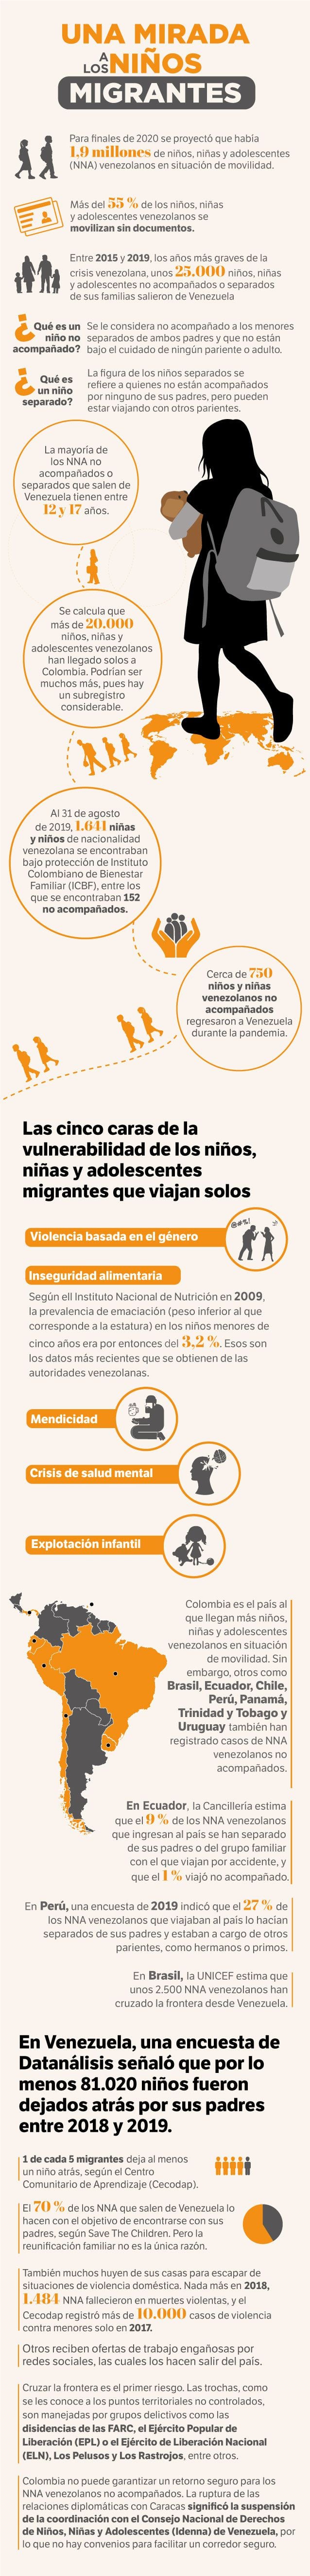 Situación de los niños, niñas y adolescentes venezolanos que migran en solitario.